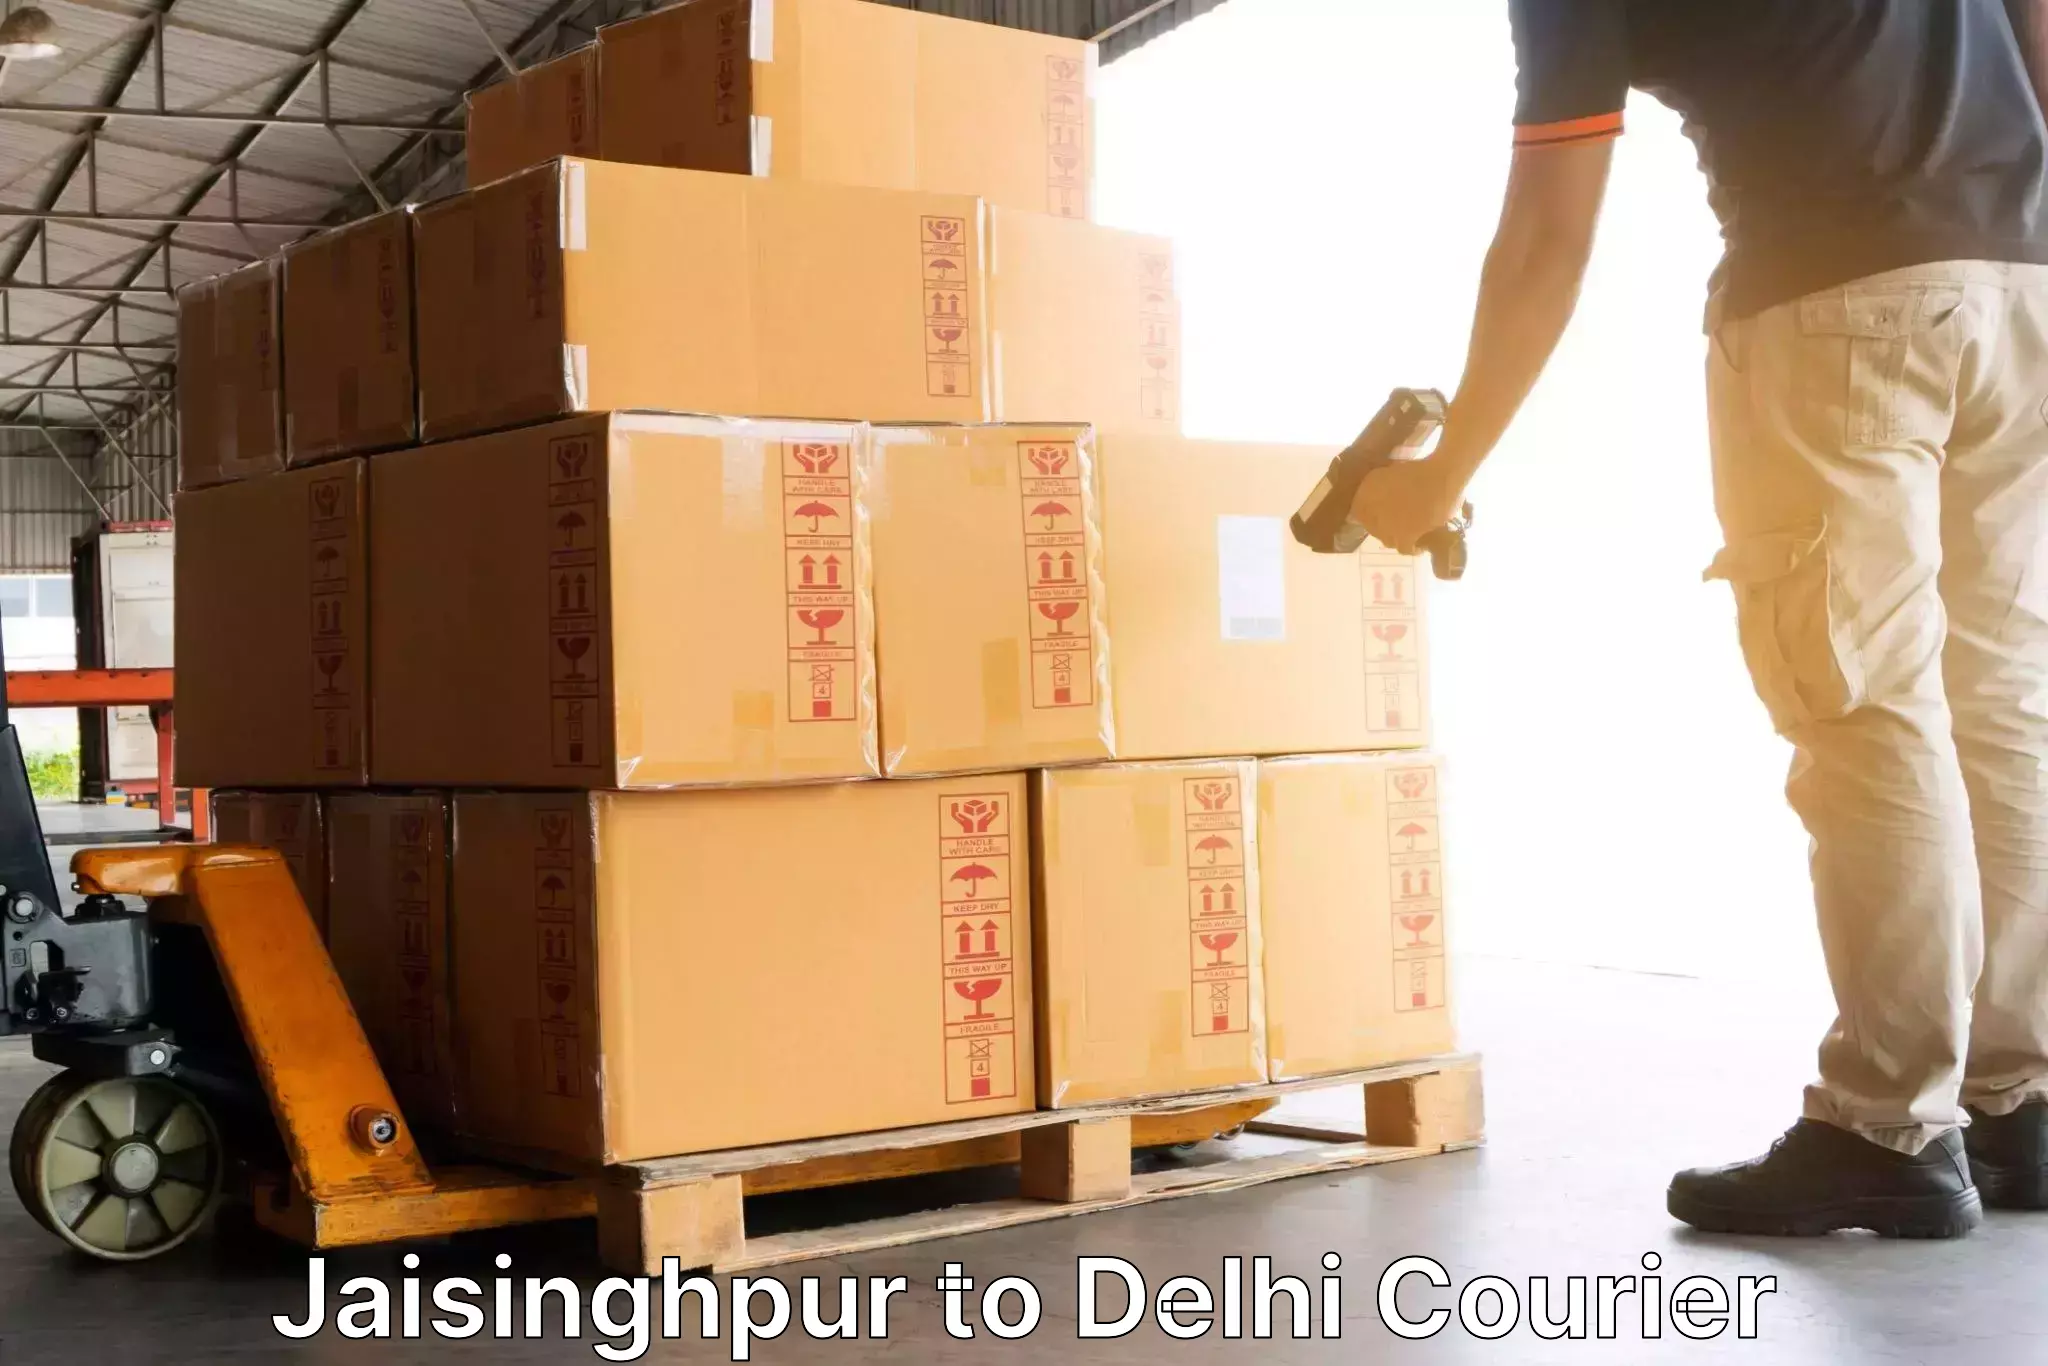 Door-to-door shipment in Jaisinghpur to East Delhi